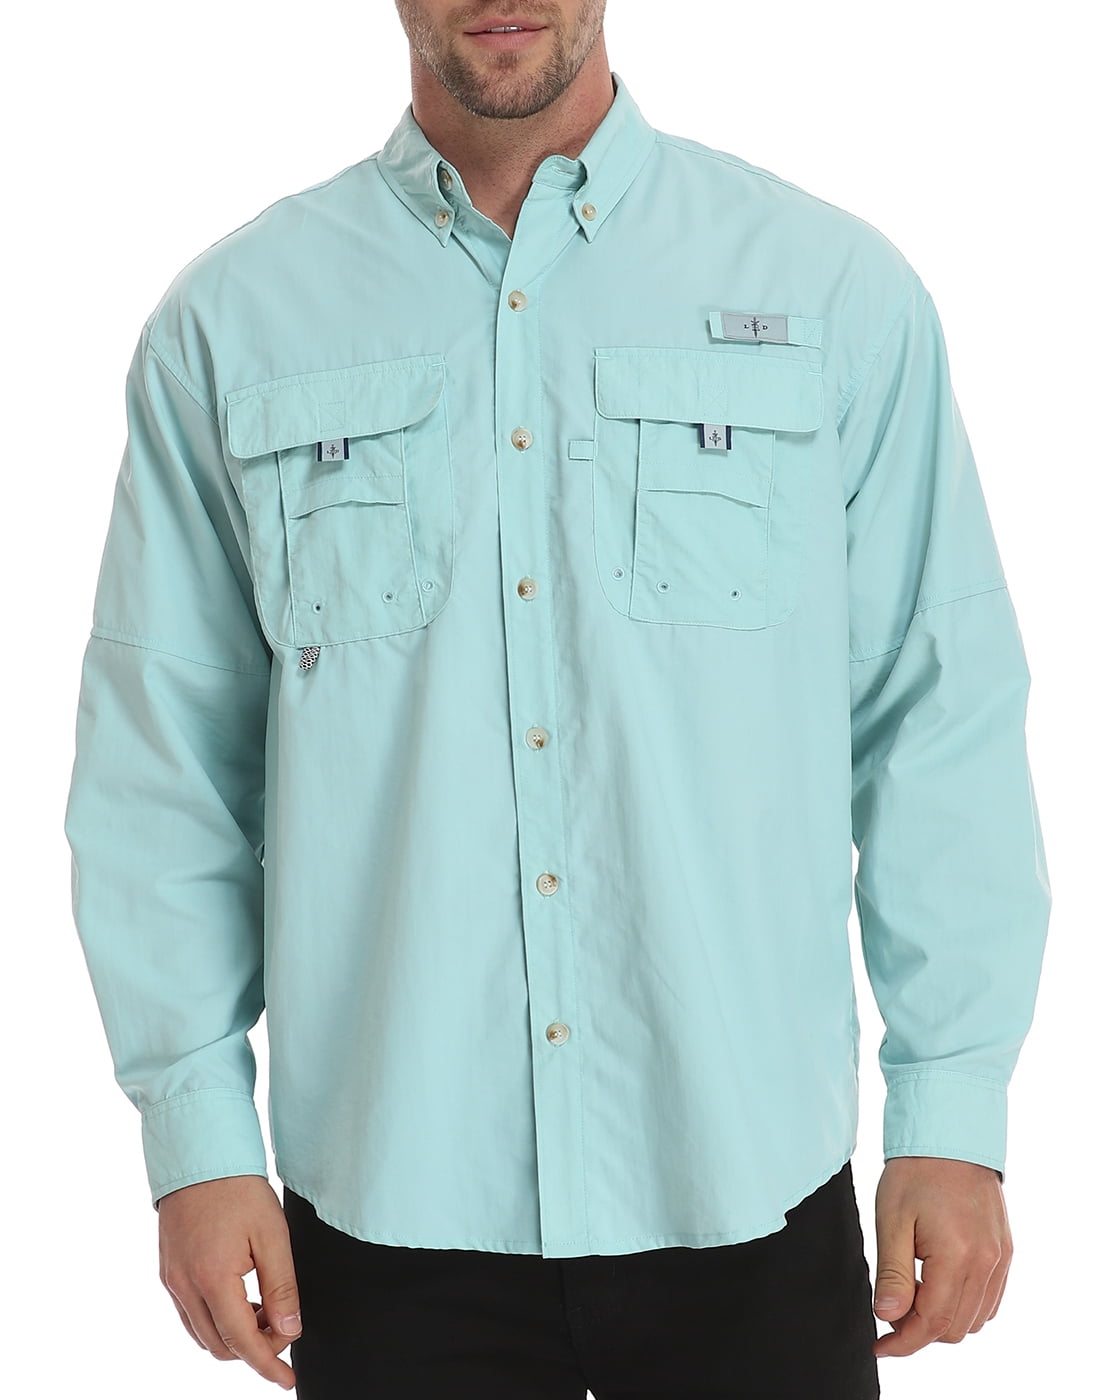 LRD Men's UPF 30 Long Sleeve Button Down Fishing Shirts Light Blue XXL